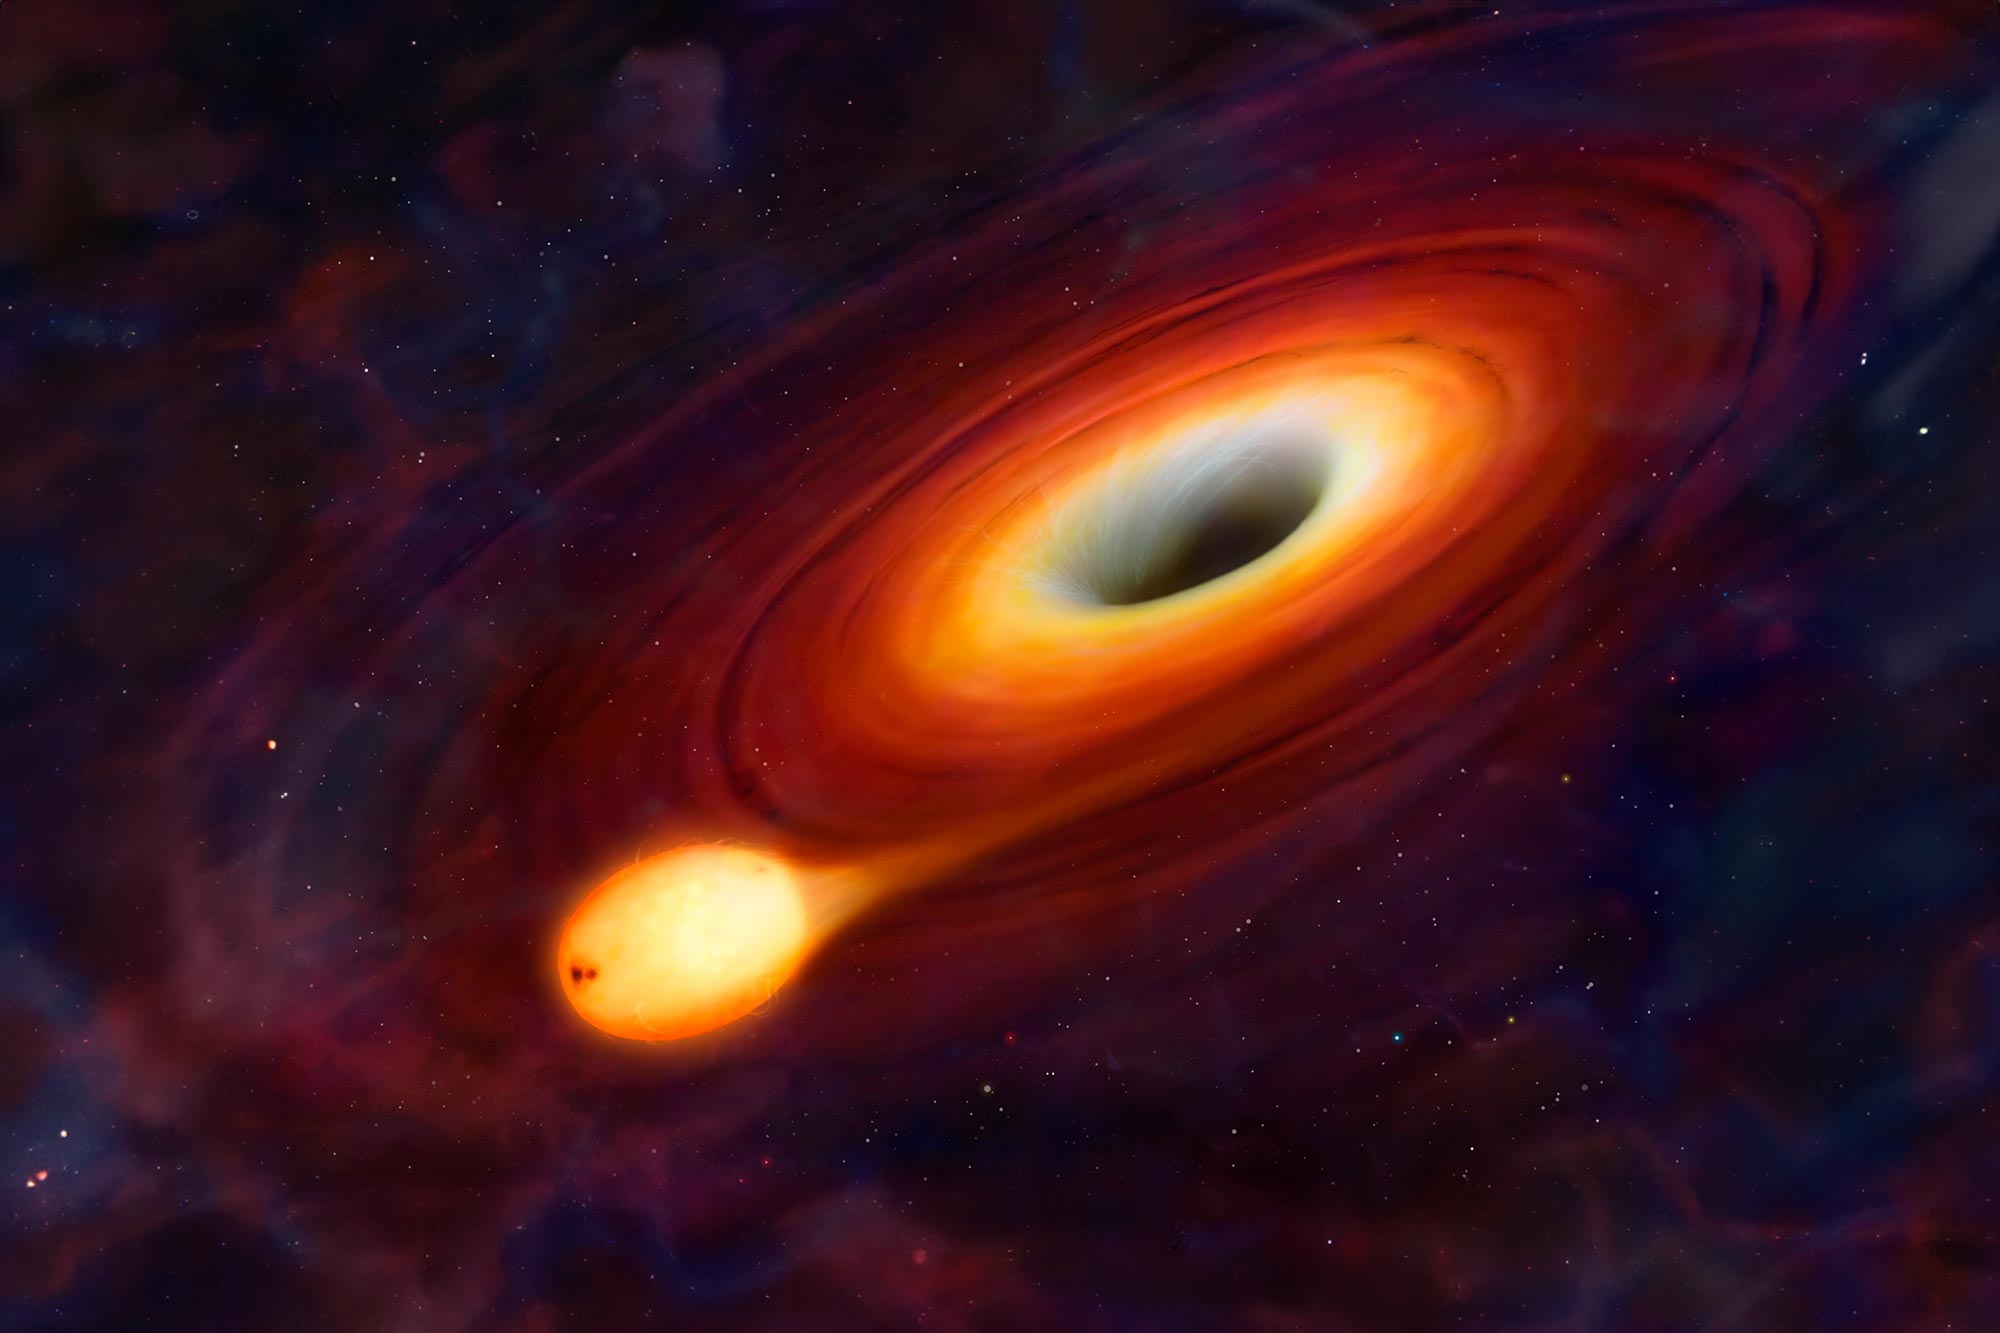 Lubang hitam yang ganas melahap bintang tiga kali lebih banyak dari Bumi setiap kali melewatinya